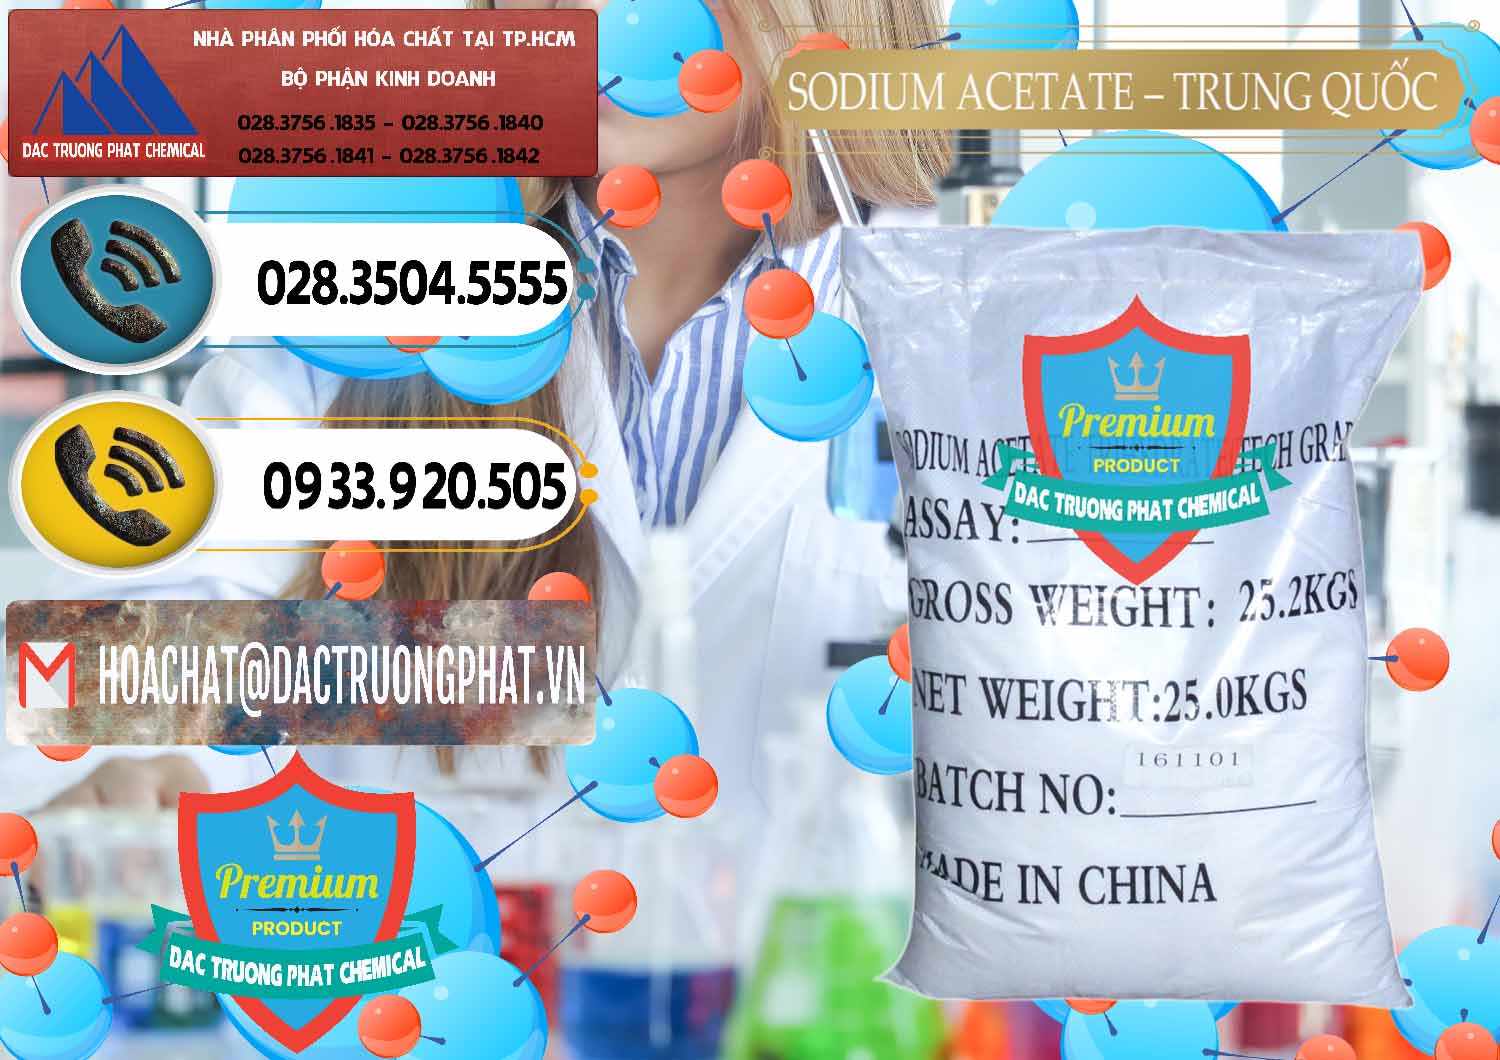 Công ty cung cấp ( bán ) Sodium Acetate - Natri Acetate Trung Quốc China - 0134 - Chuyên kinh doanh ( cung cấp ) hóa chất tại TP.HCM - hoachatdetnhuom.vn